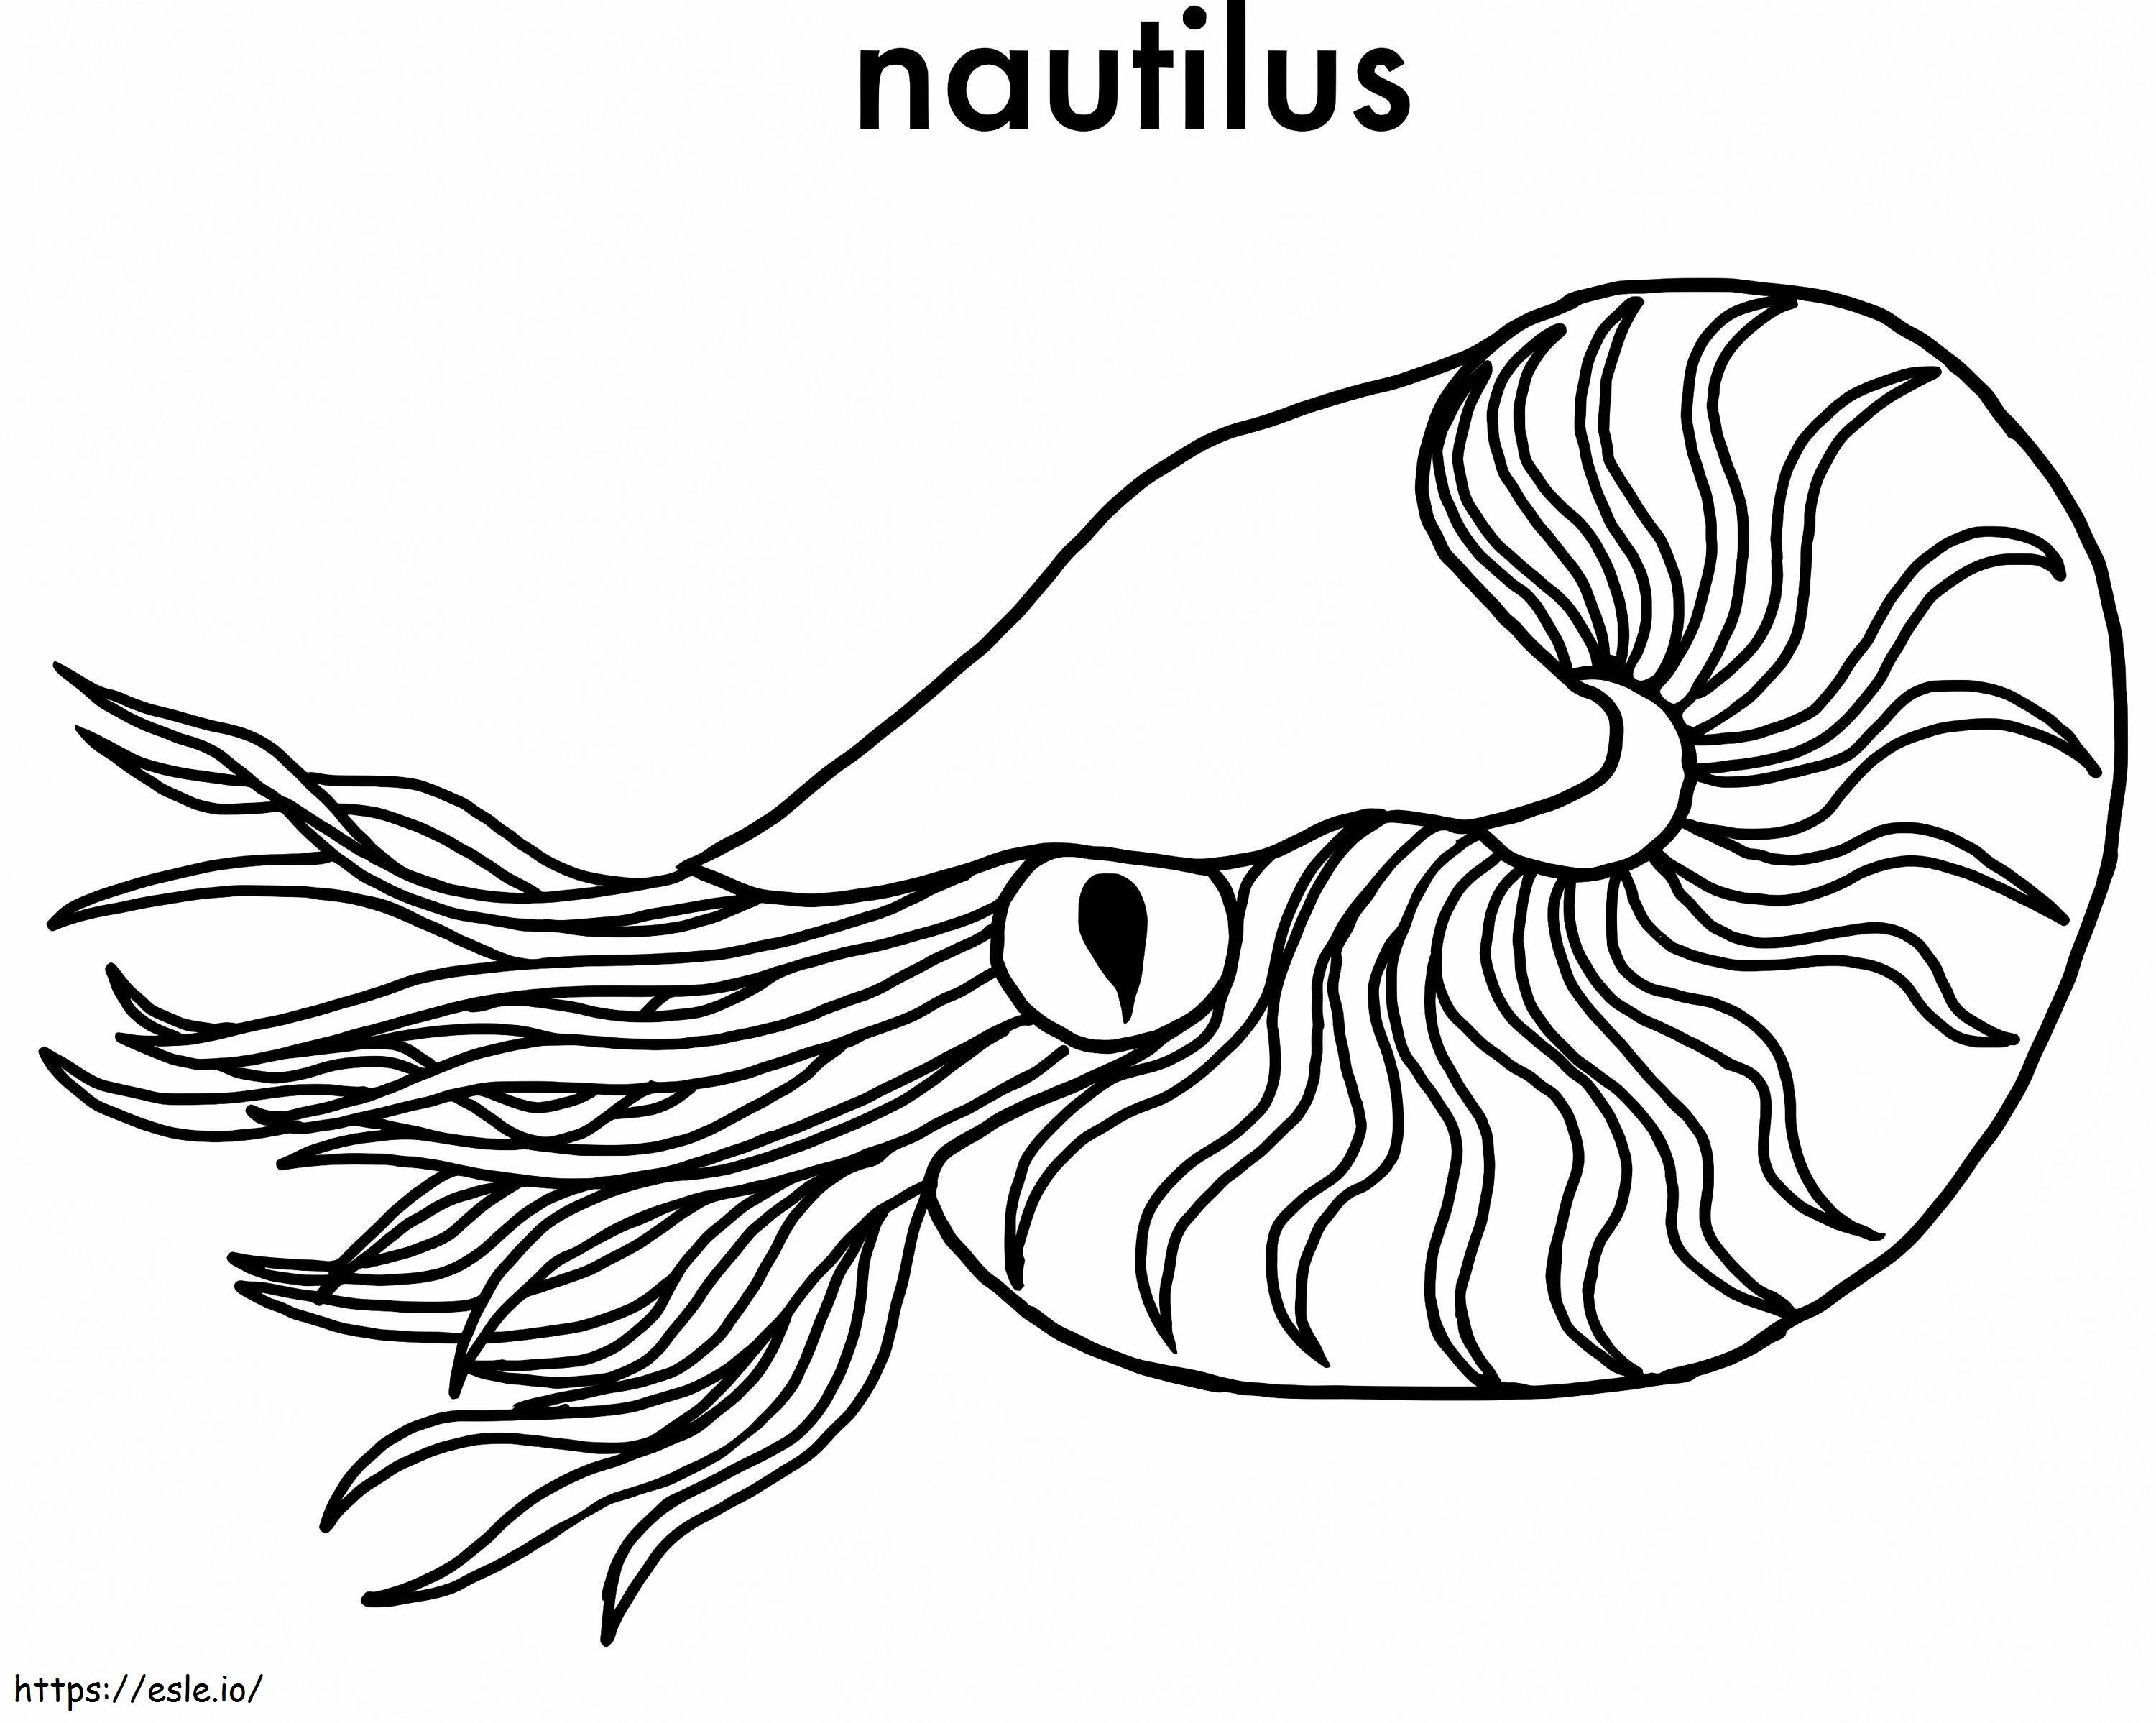 Nautilus 3 ausmalbilder